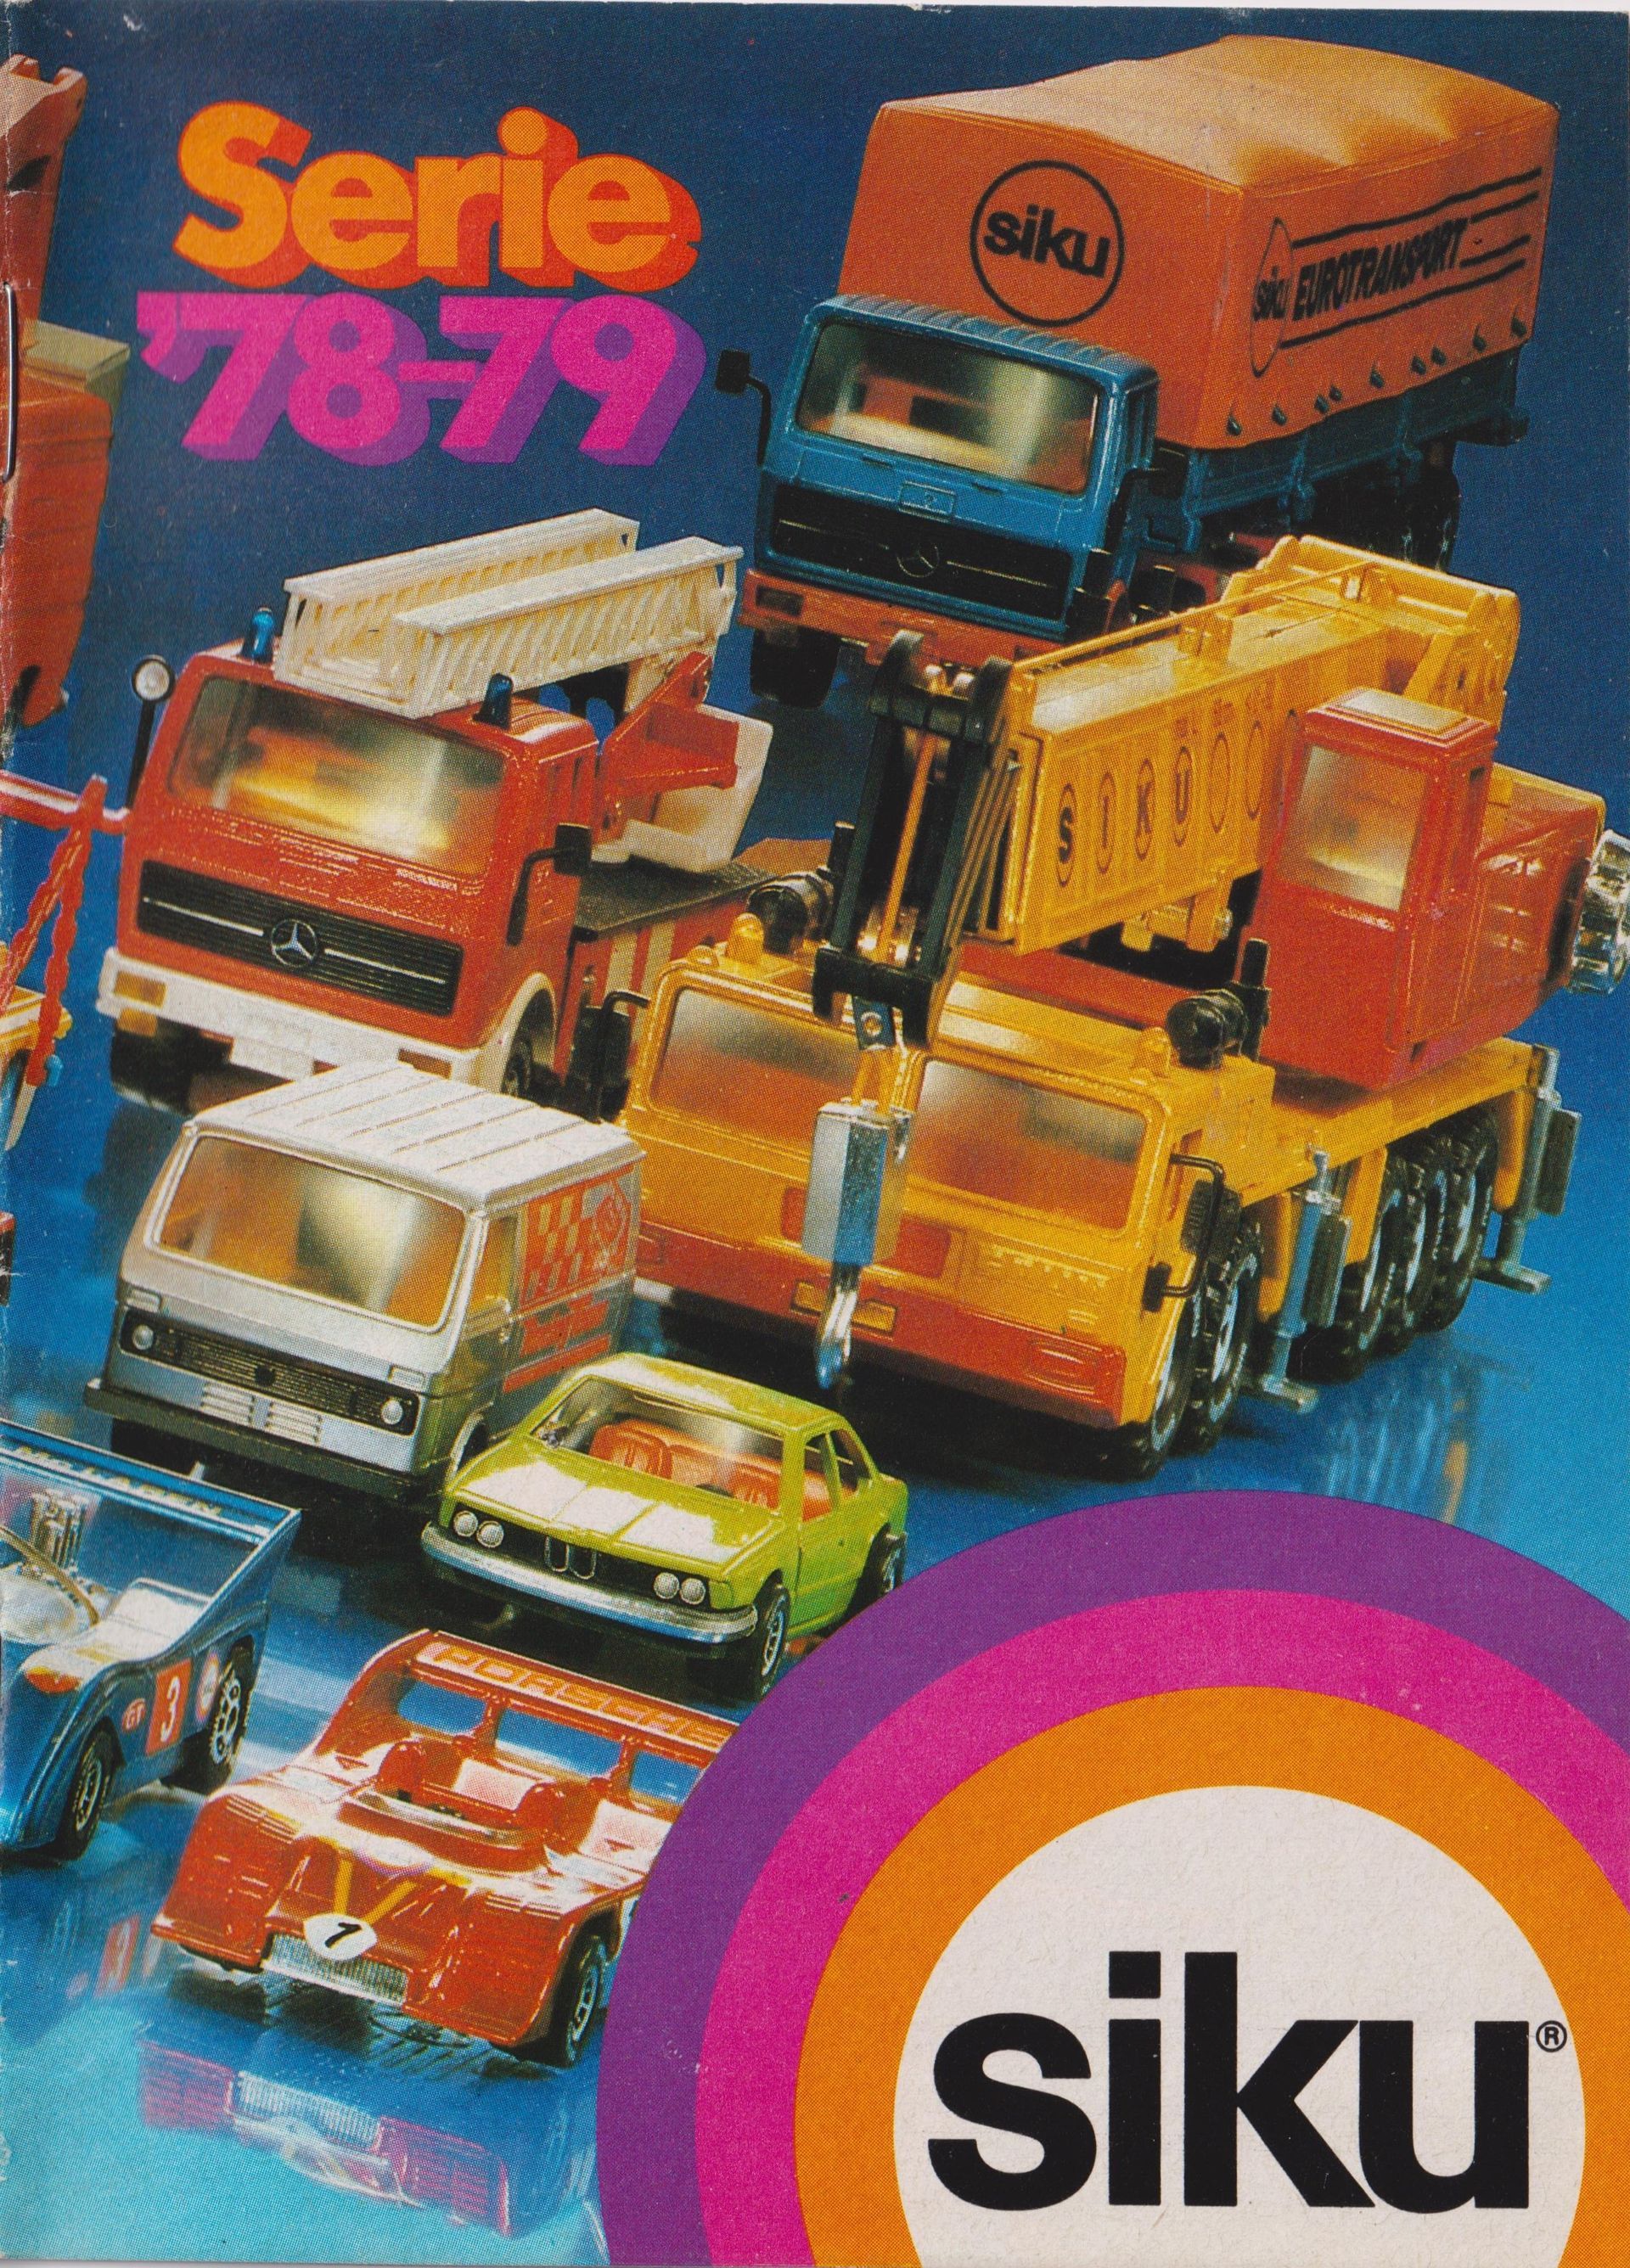 Siku Catalogue 1978-79